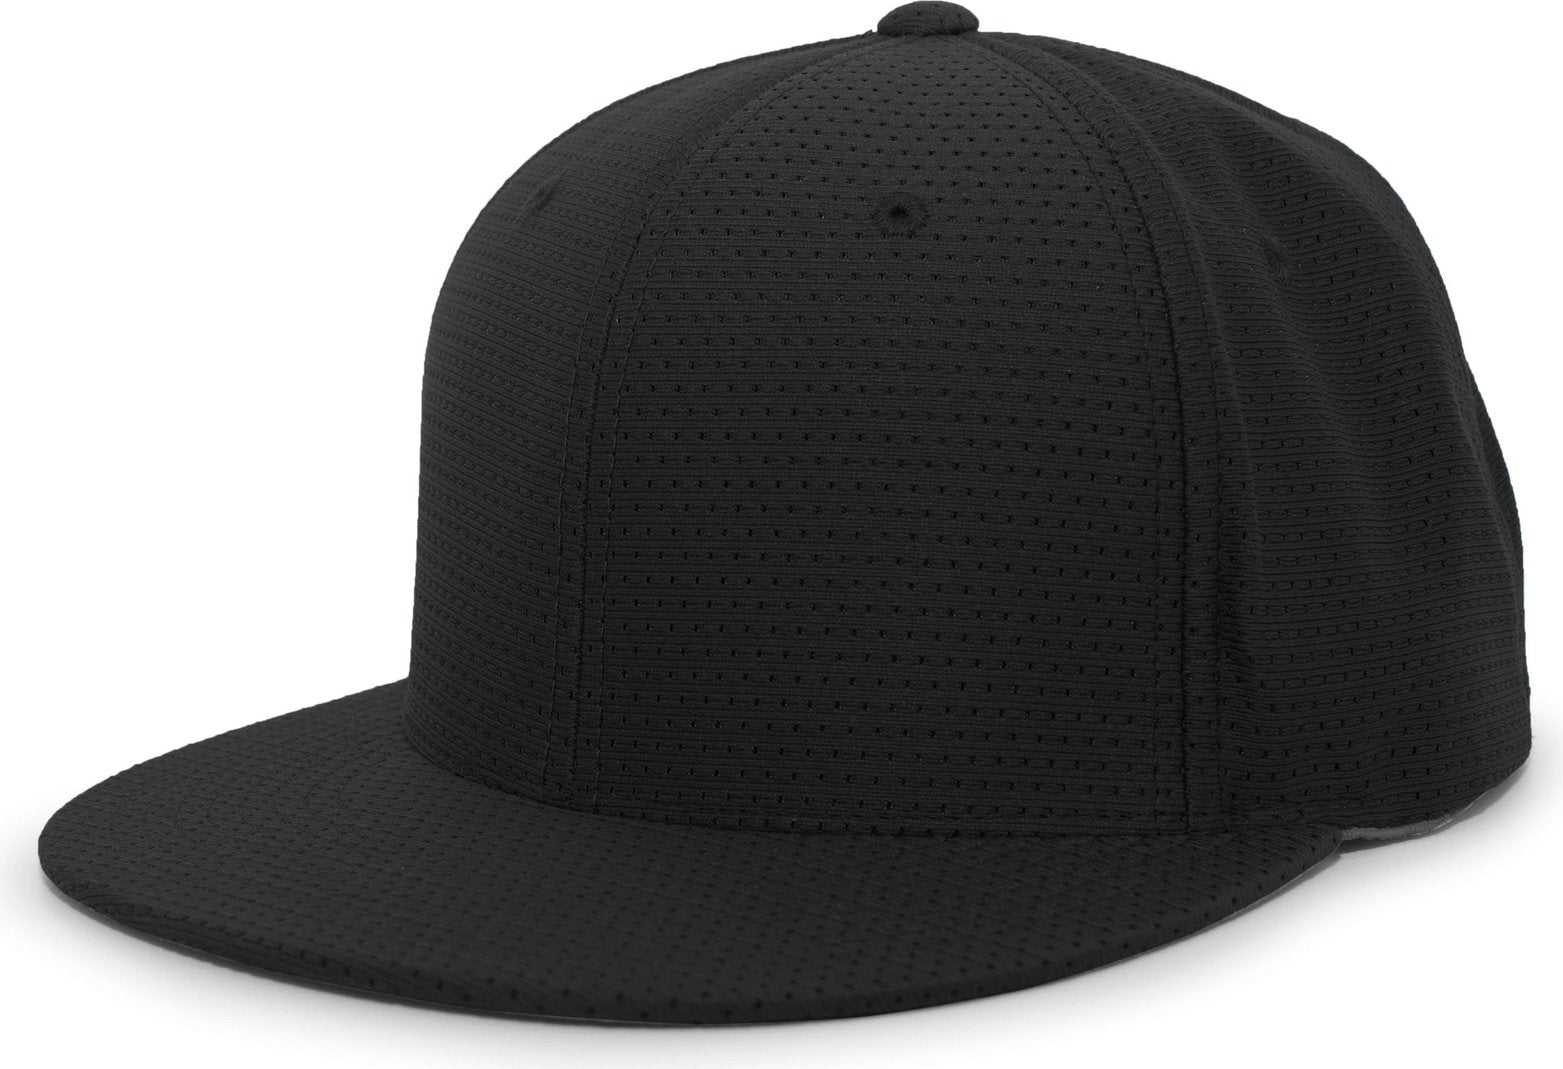 Pacific Headwear ES818 Air Jersey Performance Flexfit Cap - Black - HIT a Double